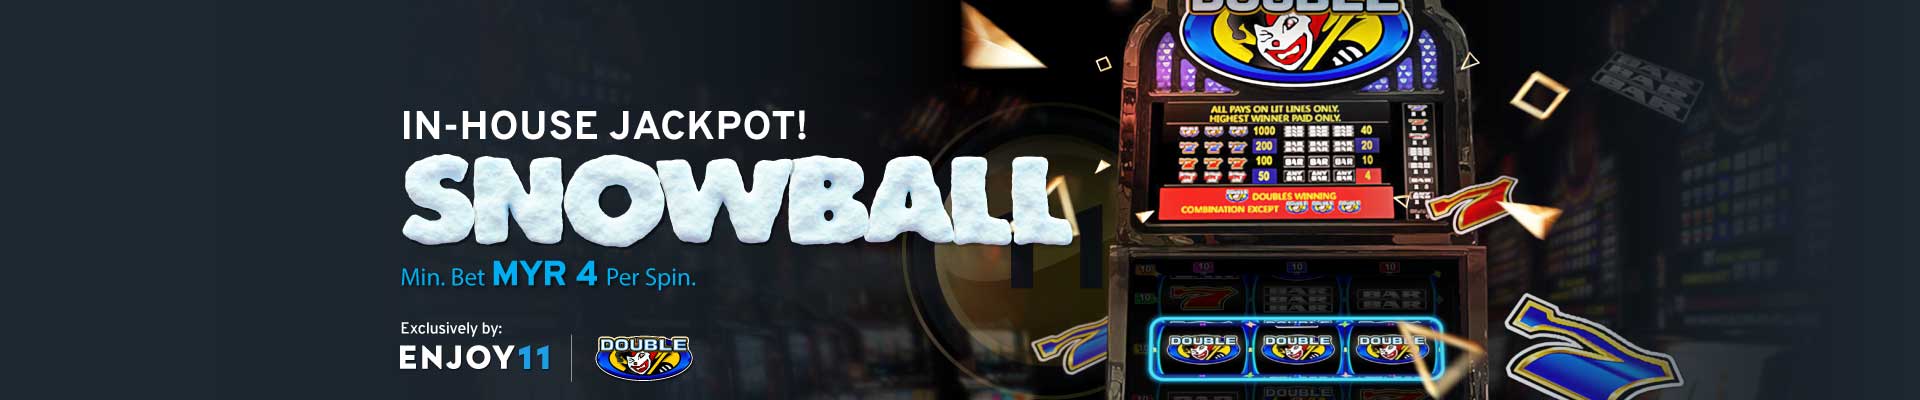 Enjoy11 In-House Jackpot Snowball Desktop Banner